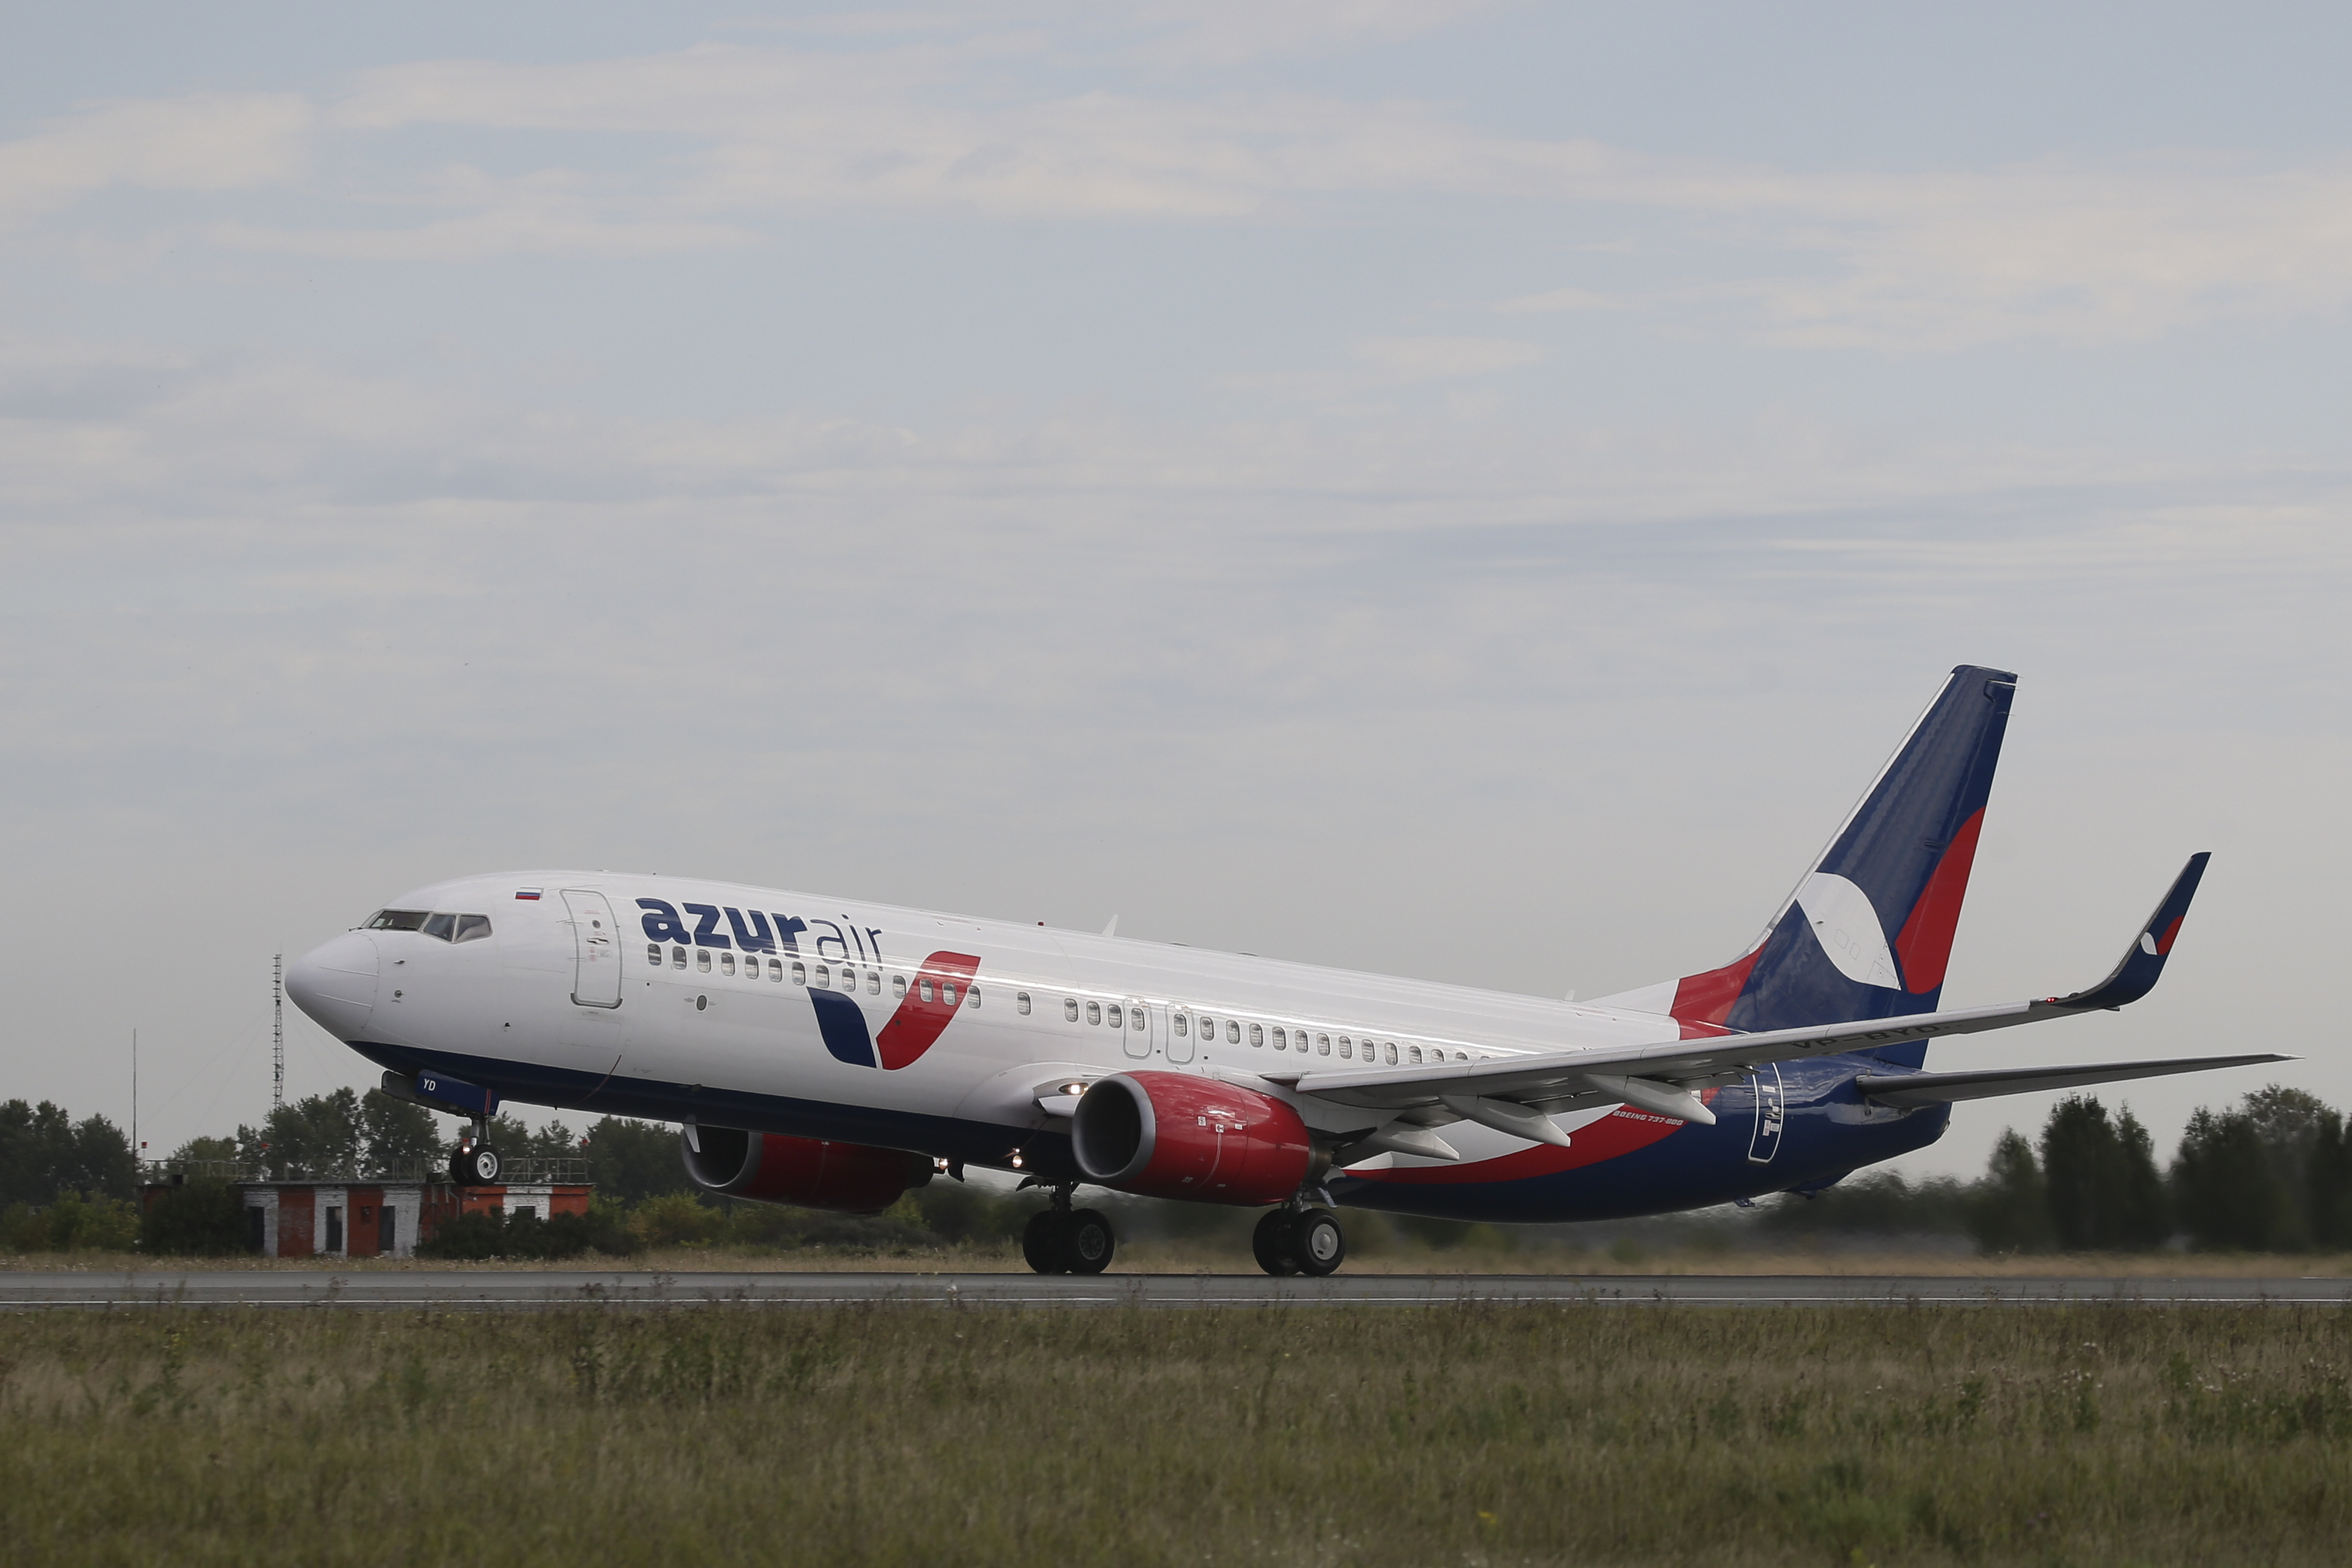 AZUR air, Новости, 21 августа 2020, Рейсы AZUR air в Турцию из Казани и Новосибирска становятся беспосадочными